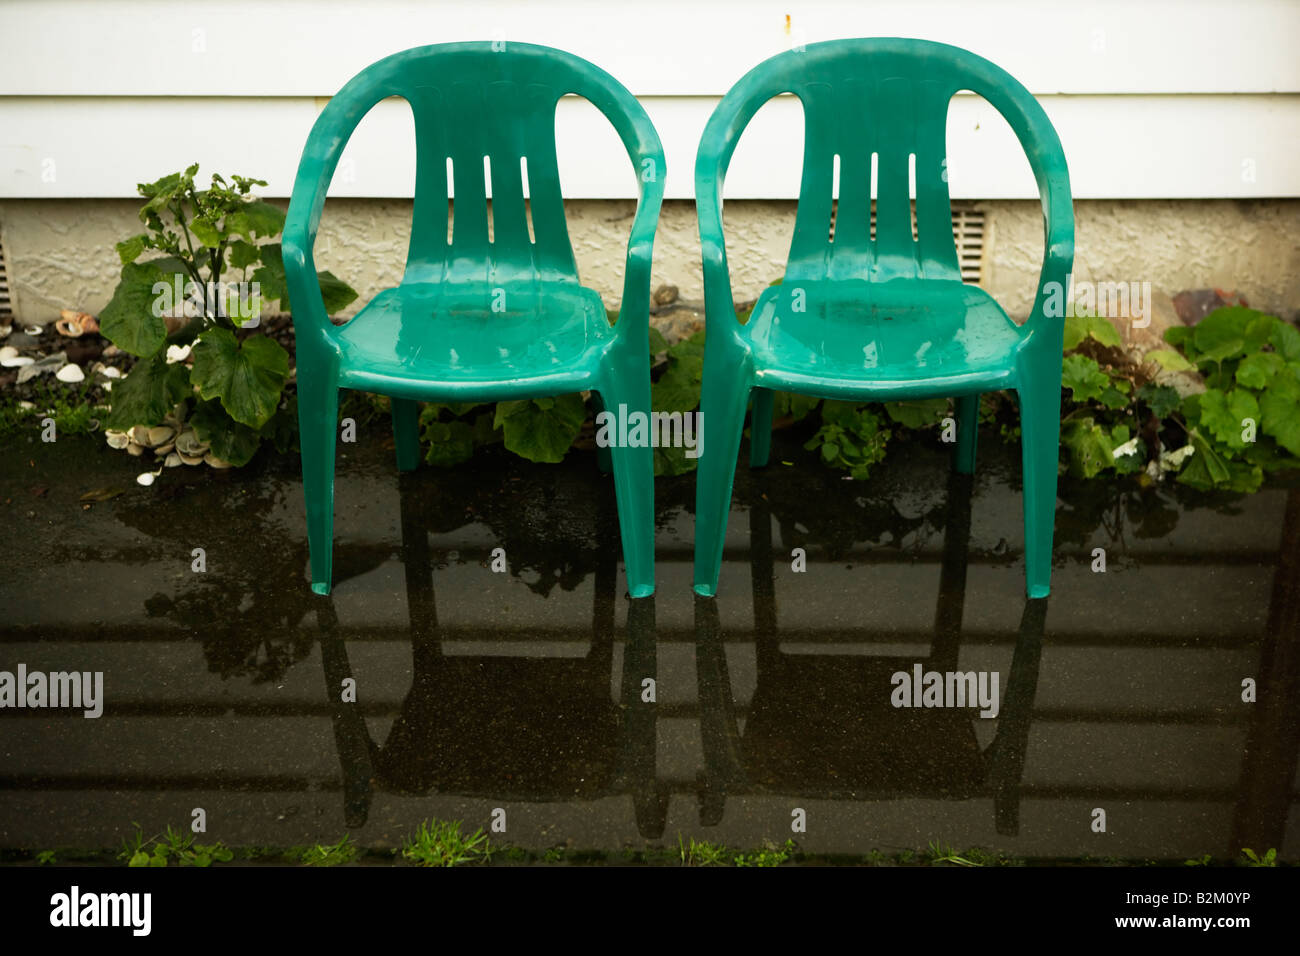 Zwei kleine Kinder s Kunststoff Gartenstühle stehen in einer Pfütze neben einem Wetterschenkel Haus Stockfoto